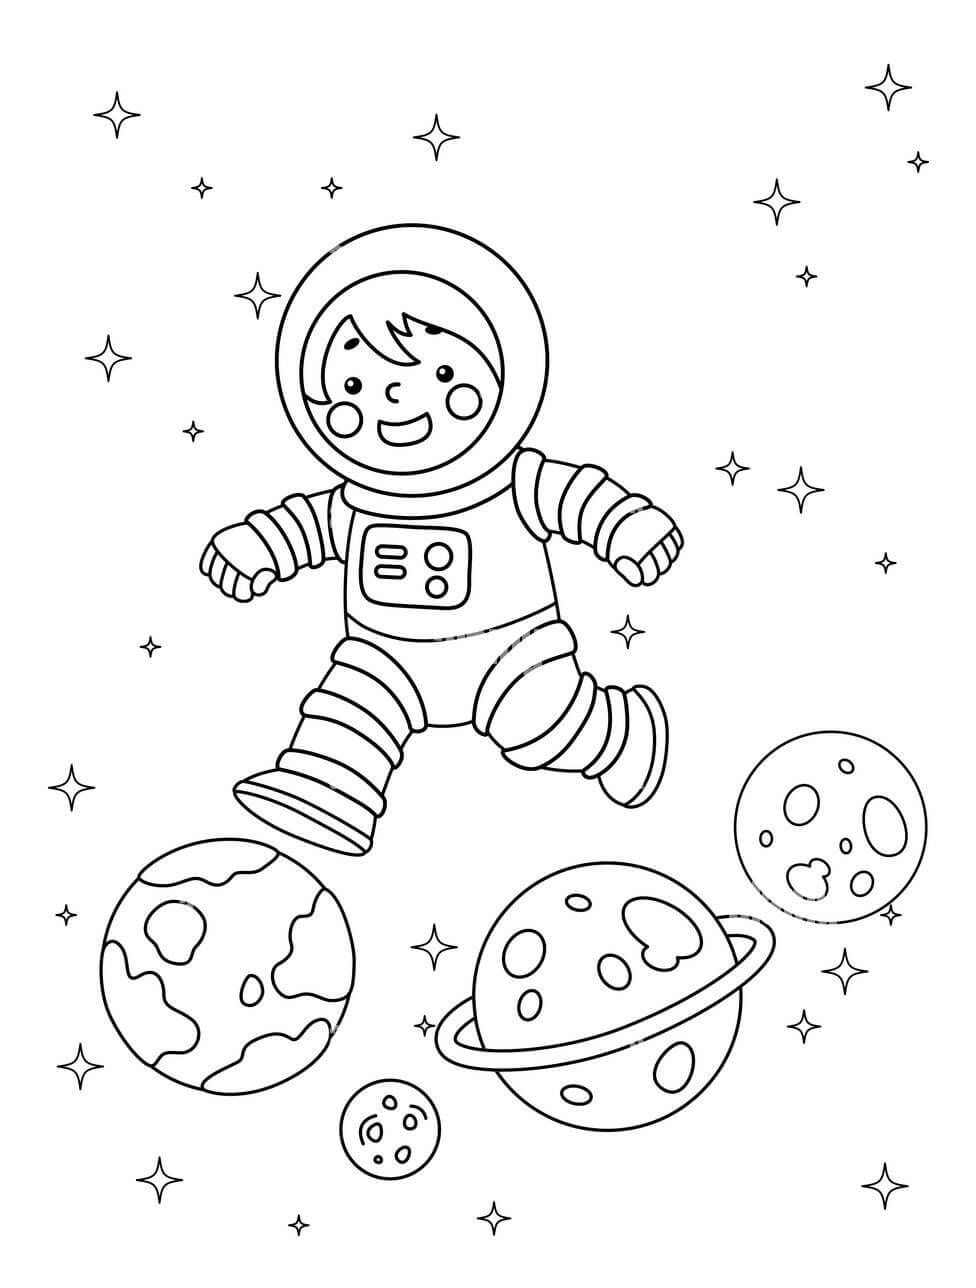 El Astronauta y los Planetas